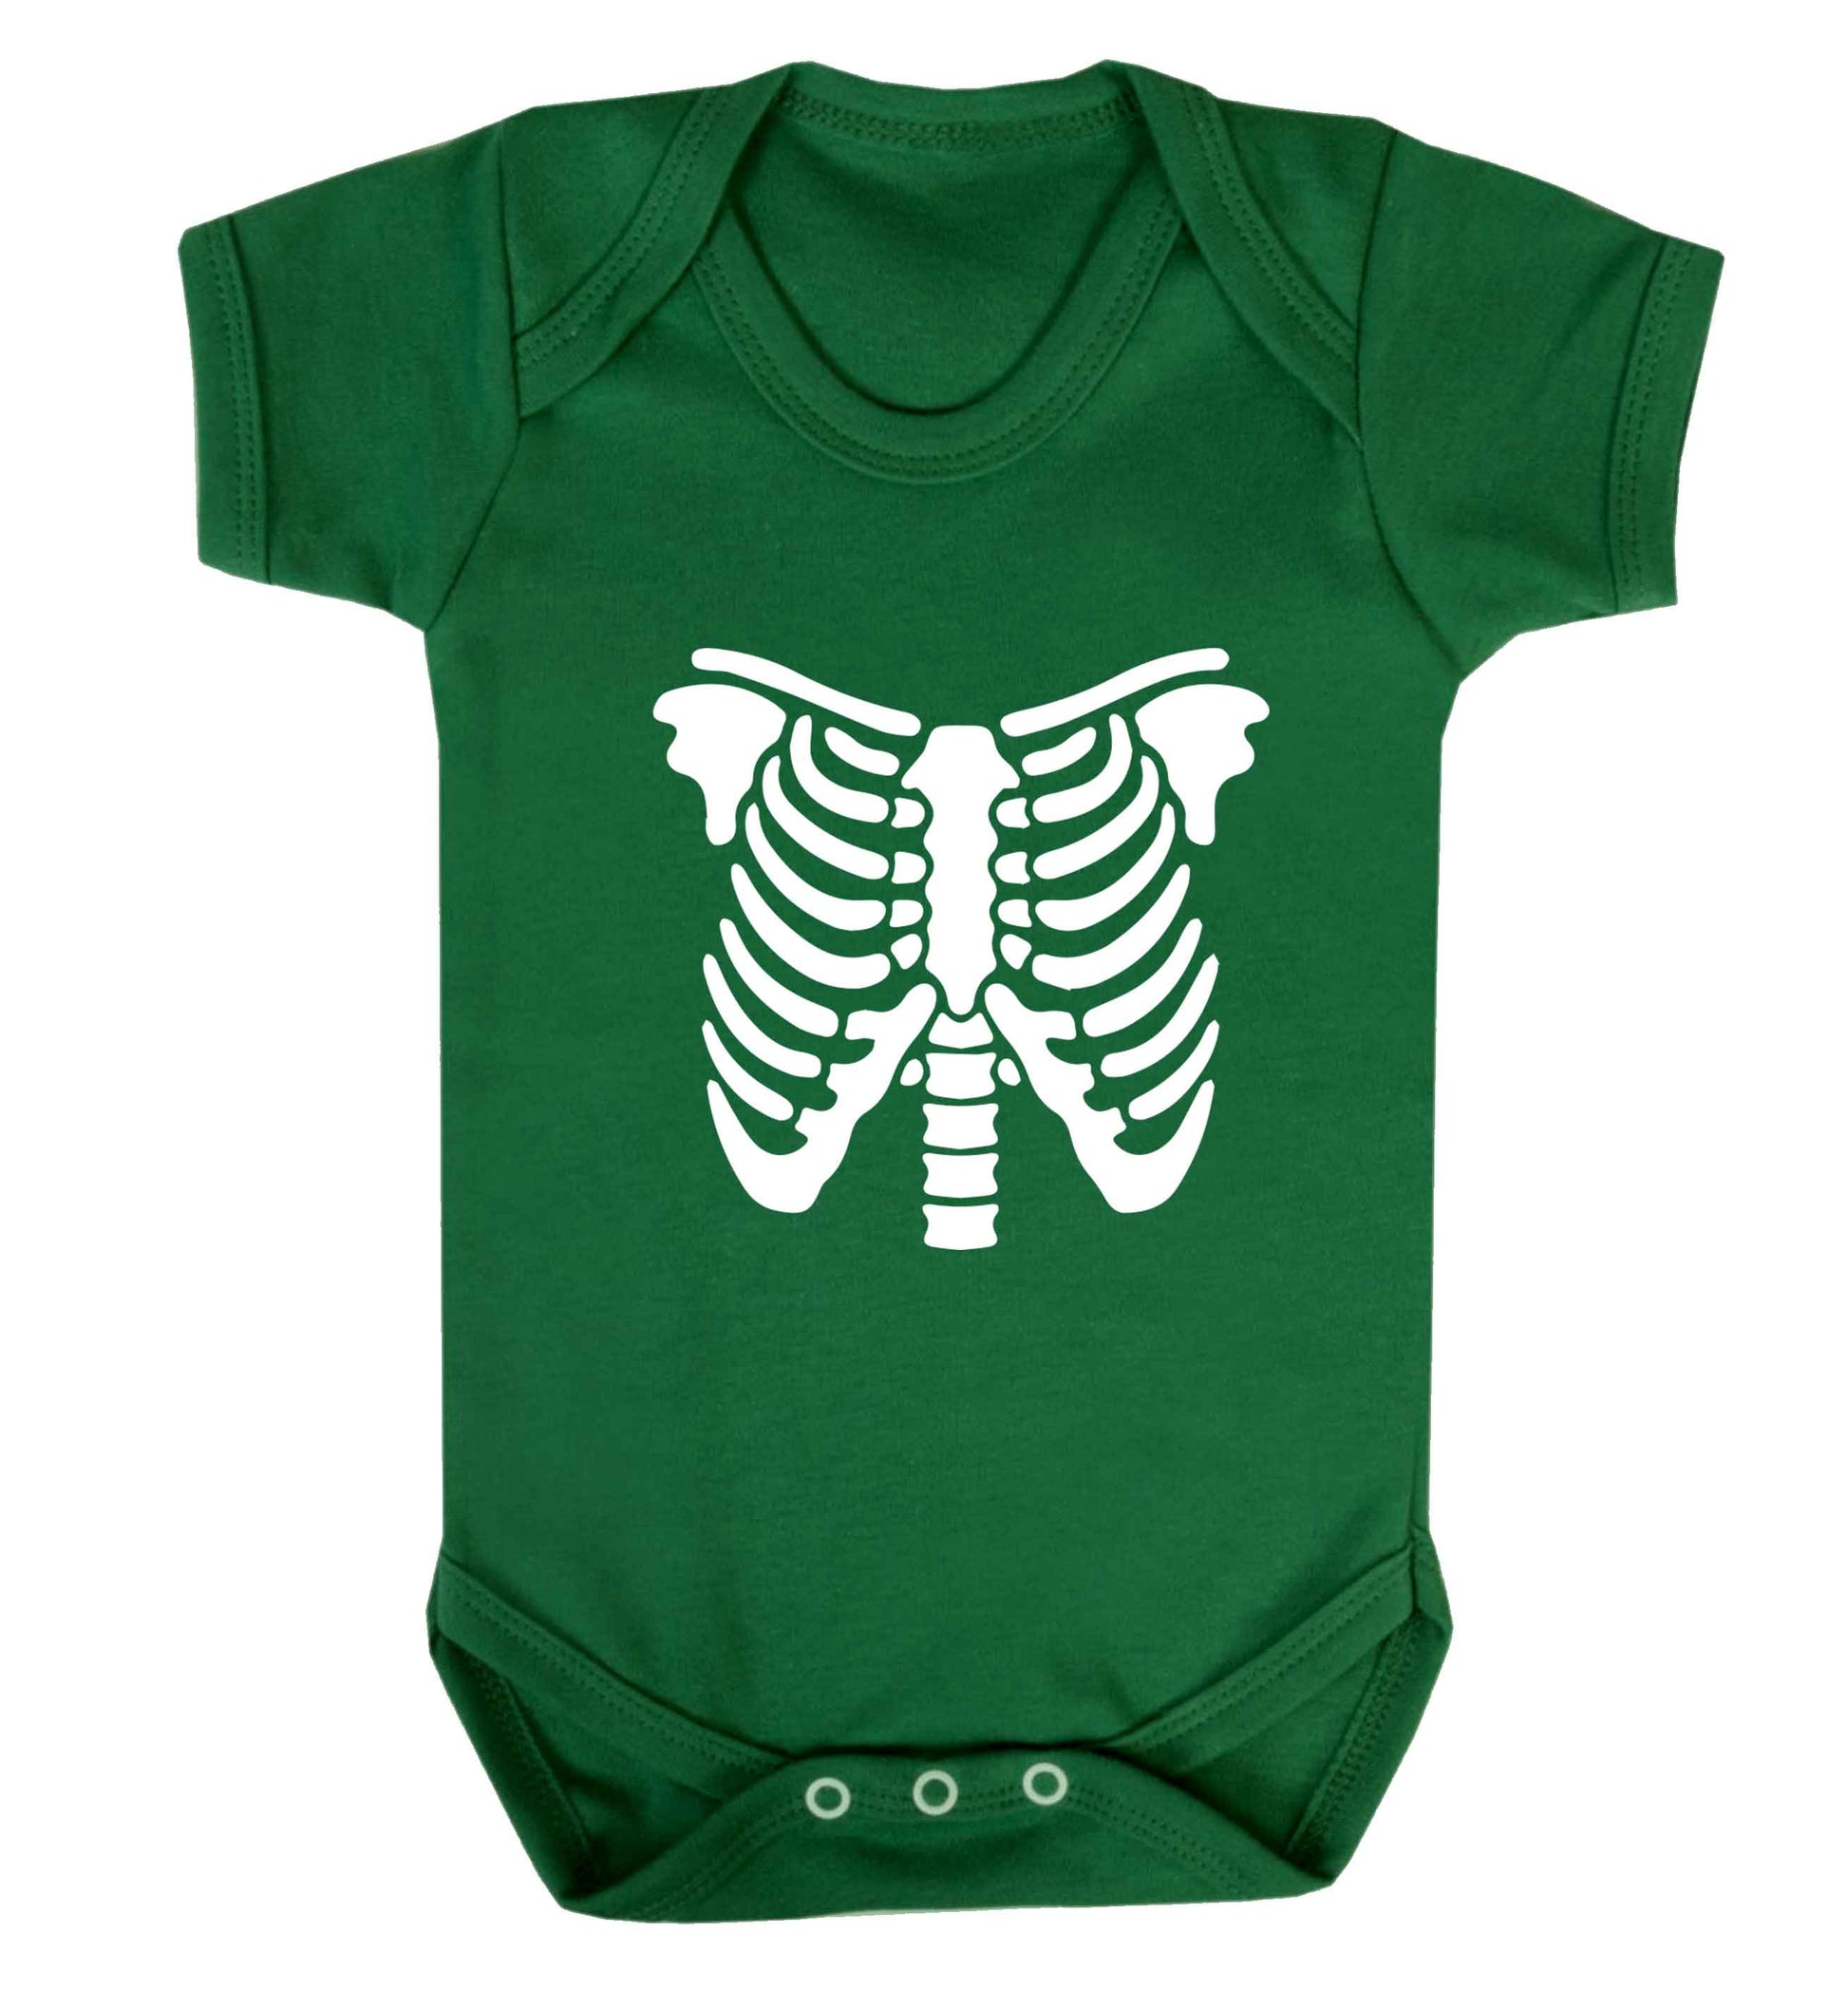 Skeleton ribcage baby vest green 18-24 months